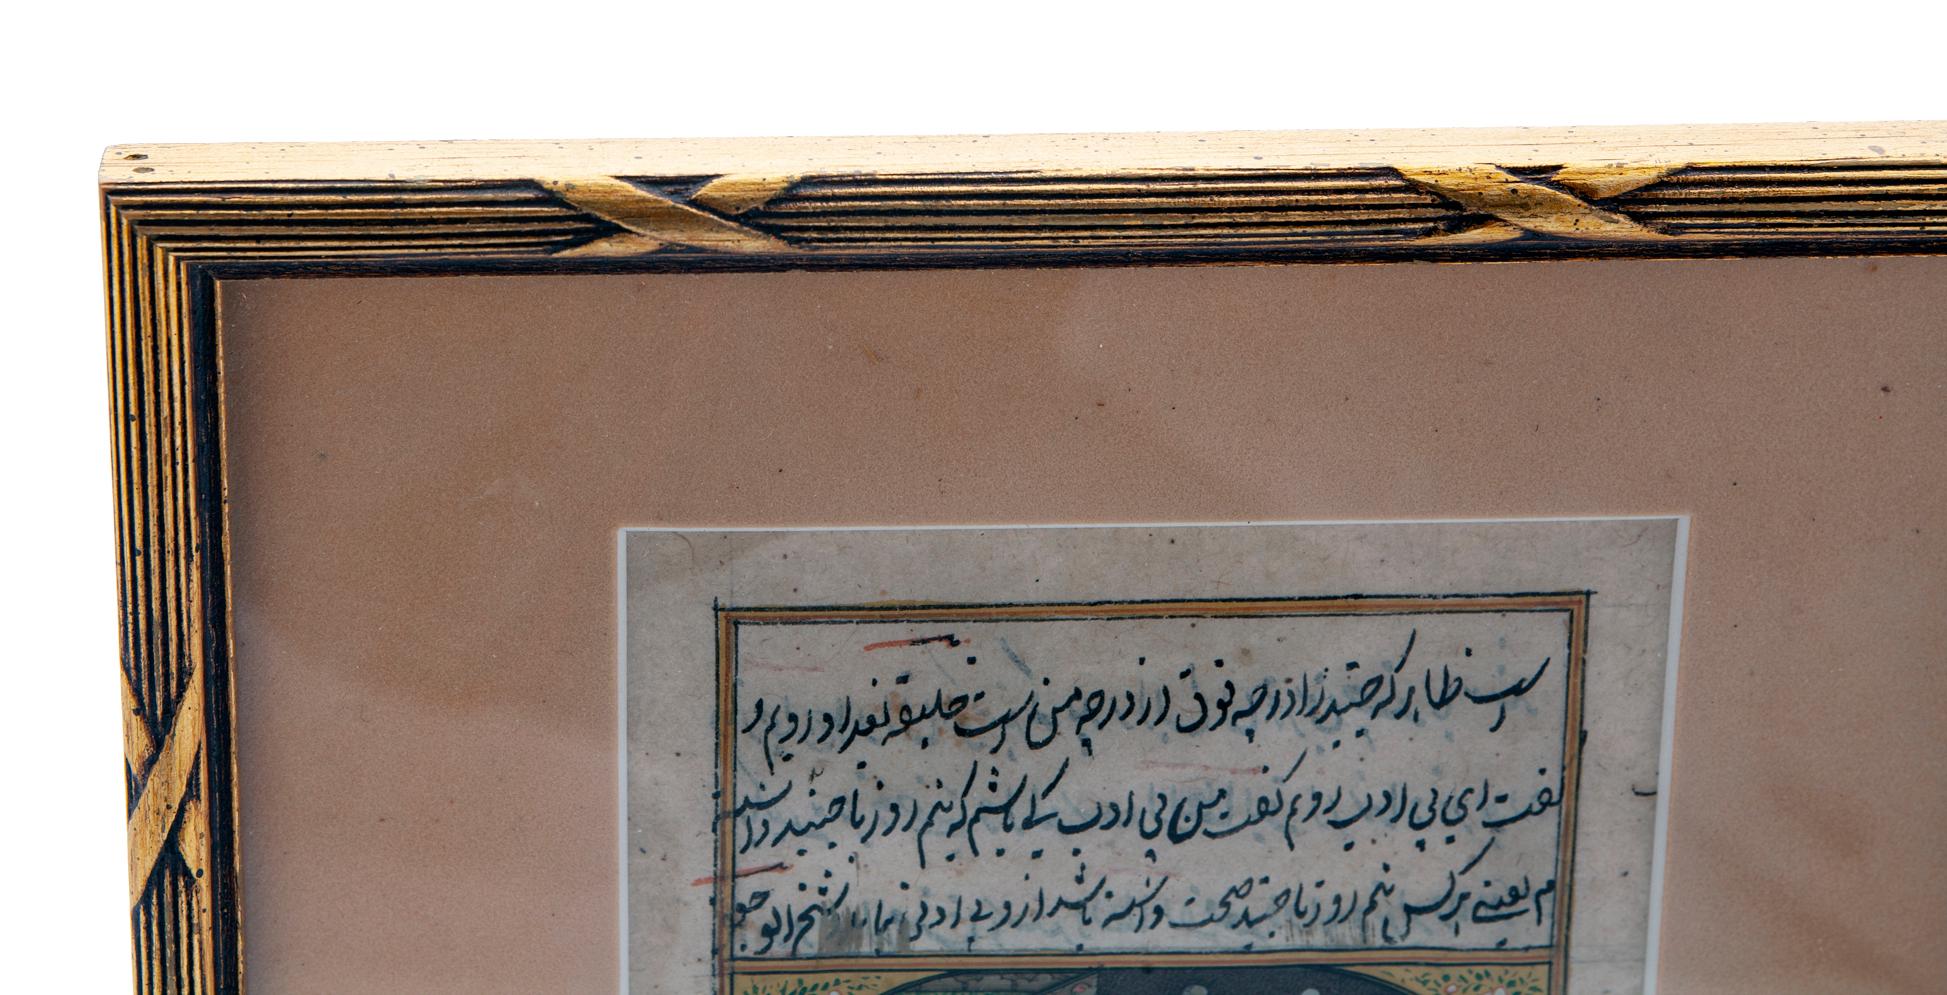 Antikes persisches Aquarell/Gouache-Gemälde
Wunderschön ausgeführtes Gemälde auf Papier, das eine lebendige Komposition eines Wasserpfeifenrauchers in einer farbenfrohen Landschaftsszene zeigt.
Der Raucher ist in traditioneller persischer Tracht